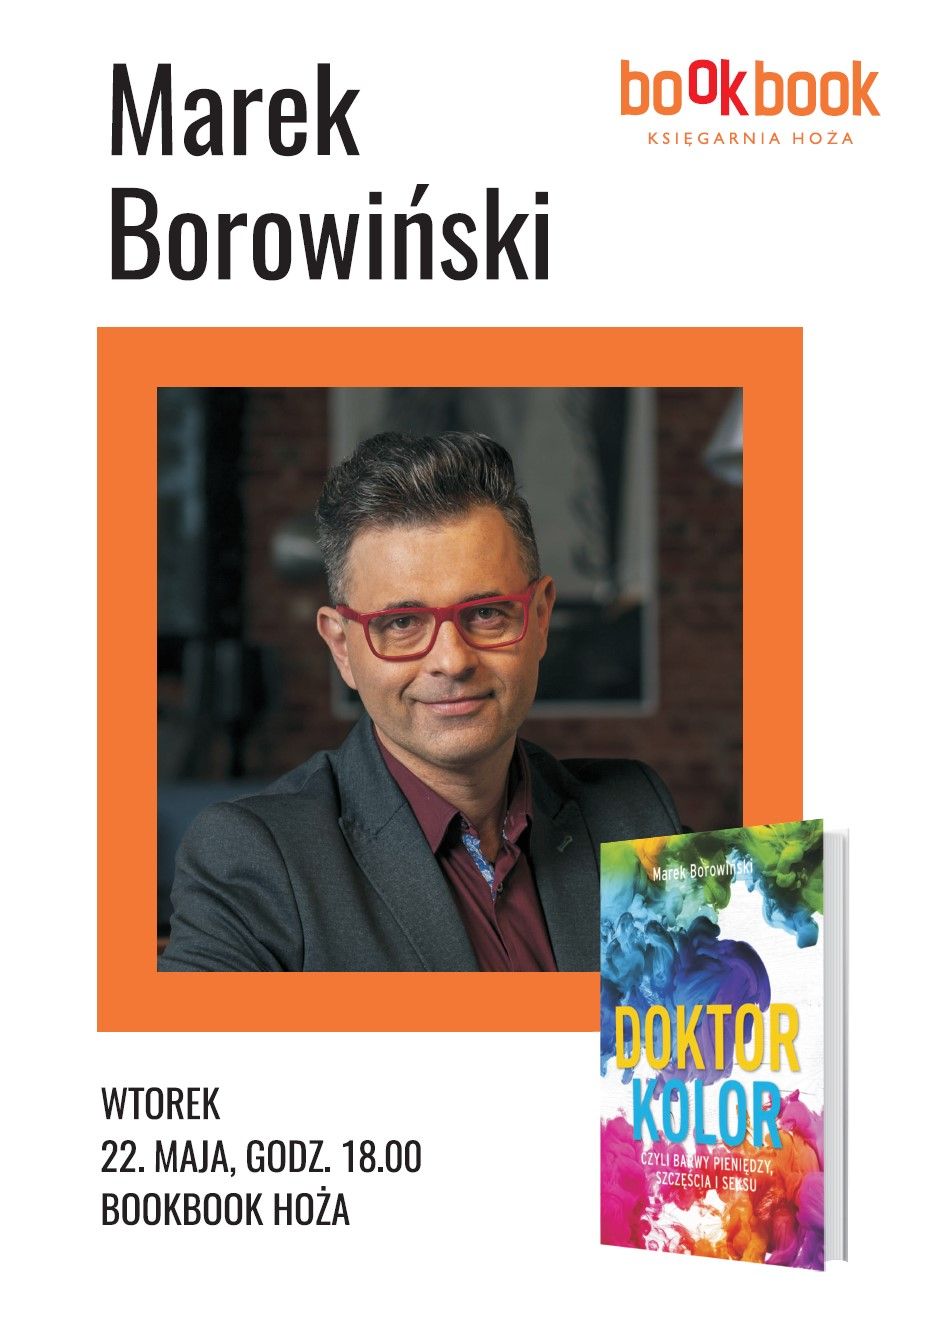 BookBook, "Dzieje się, Jak kolory wpływają na nasze życie", dr Marek Borowiński 